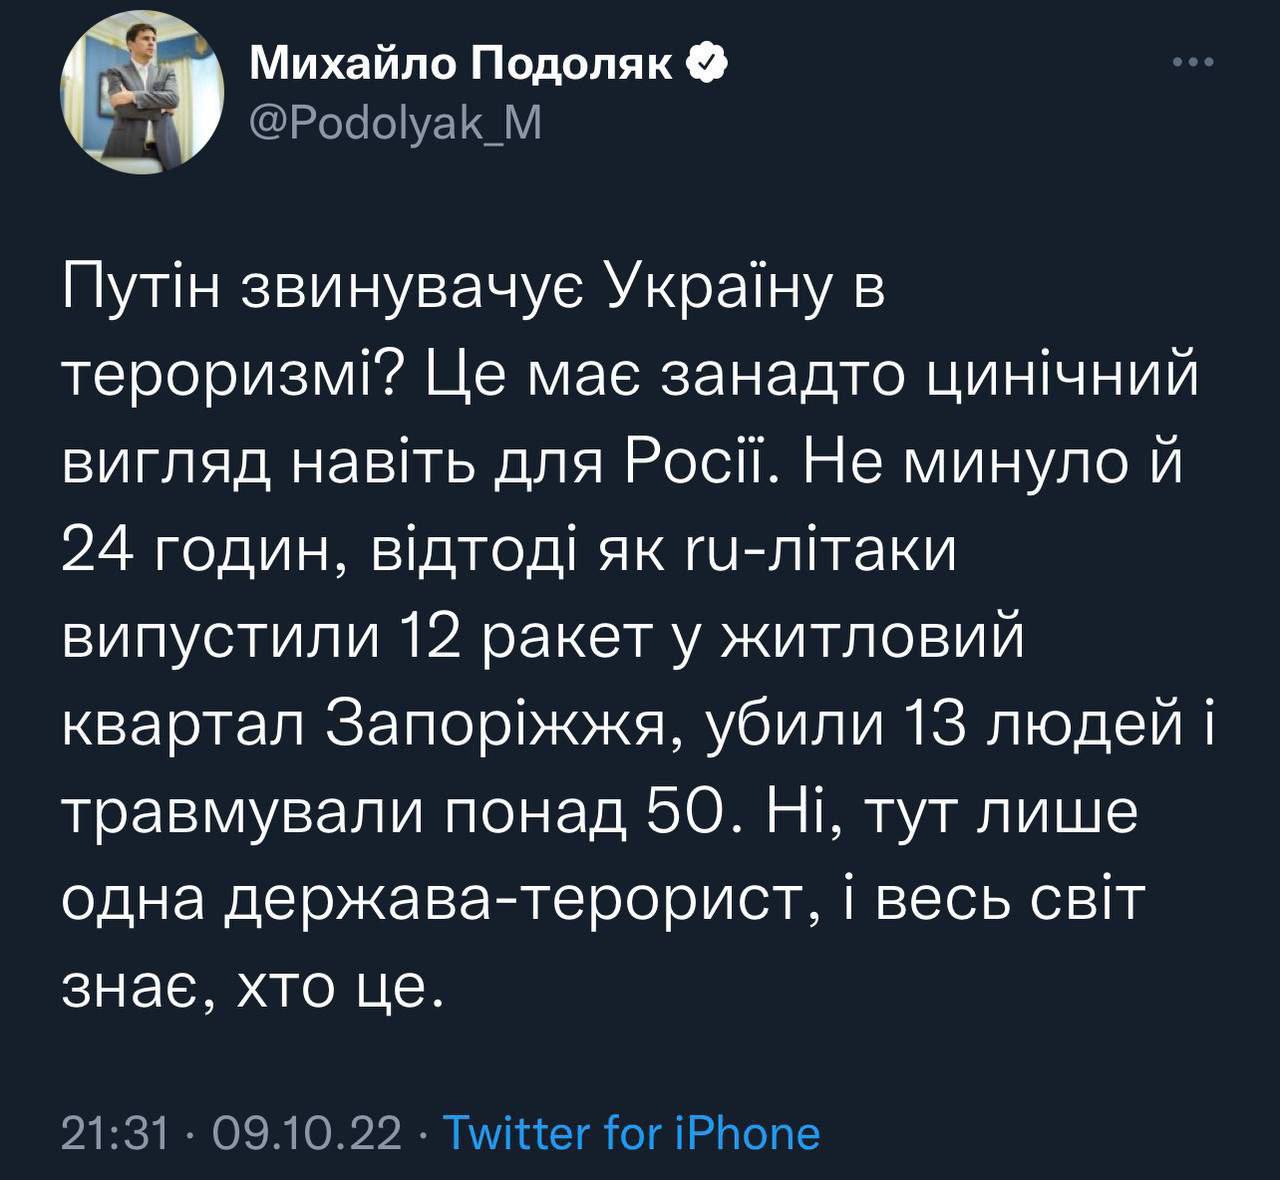 Советник главы ОП Подоляк ответил на обвинения бункерного упыря в "терроризме", отметив, что это выглядит слишком цинично даже для россии